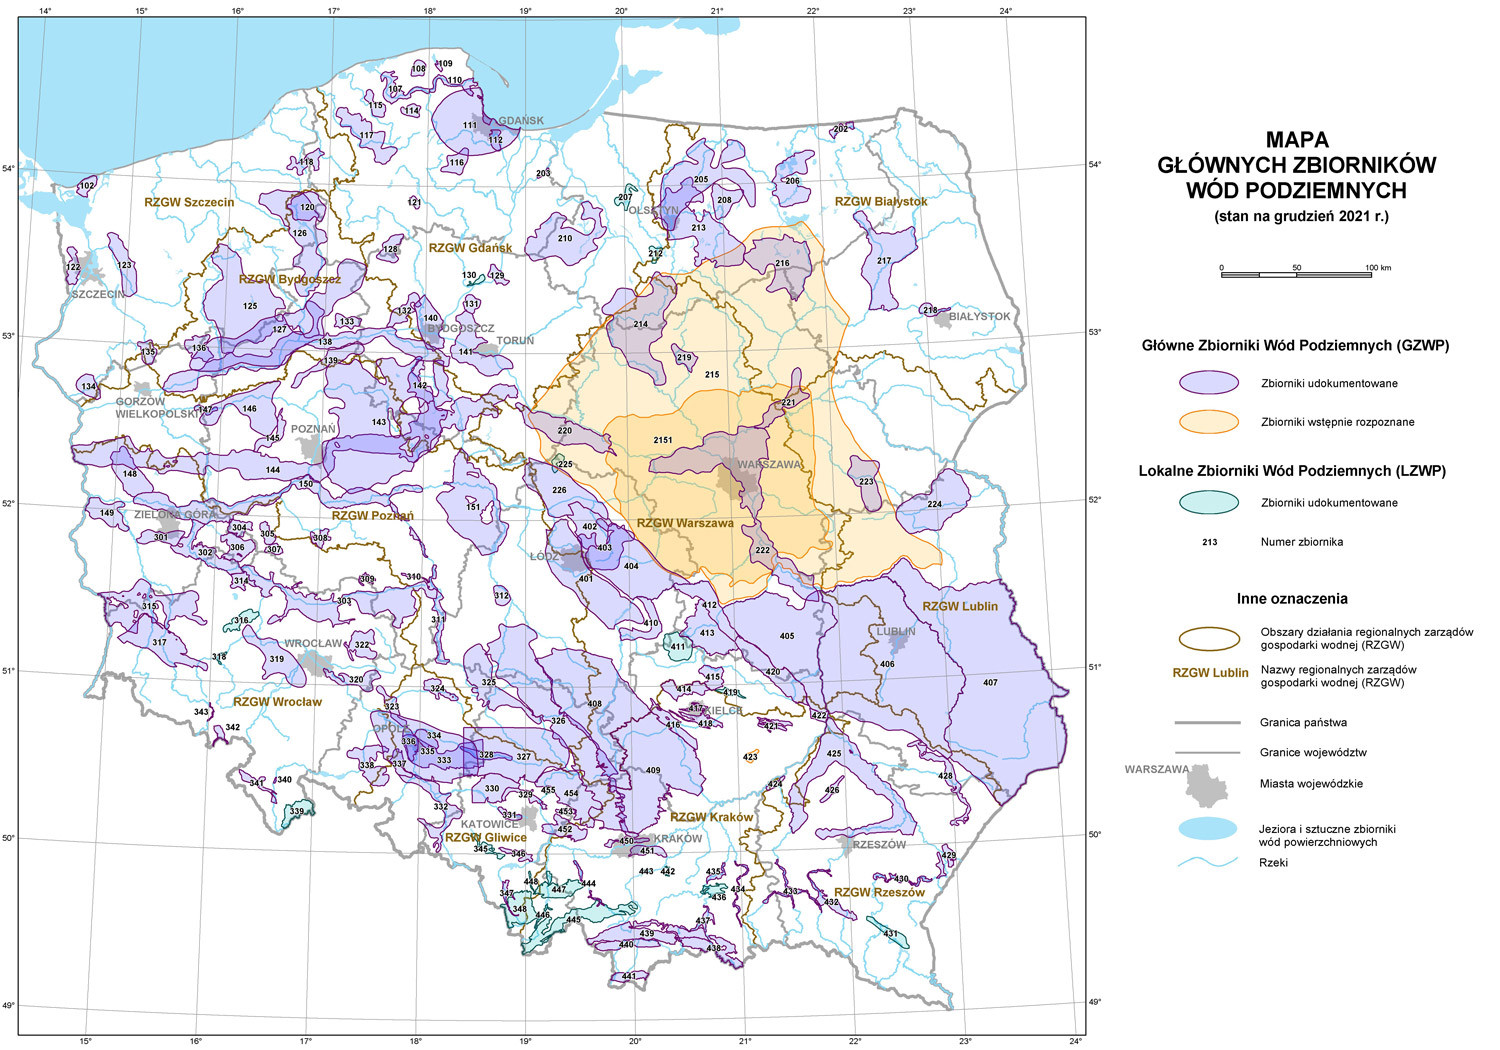 Mapa Głównych Zbiorników Wodnych stan na grudzień 2021